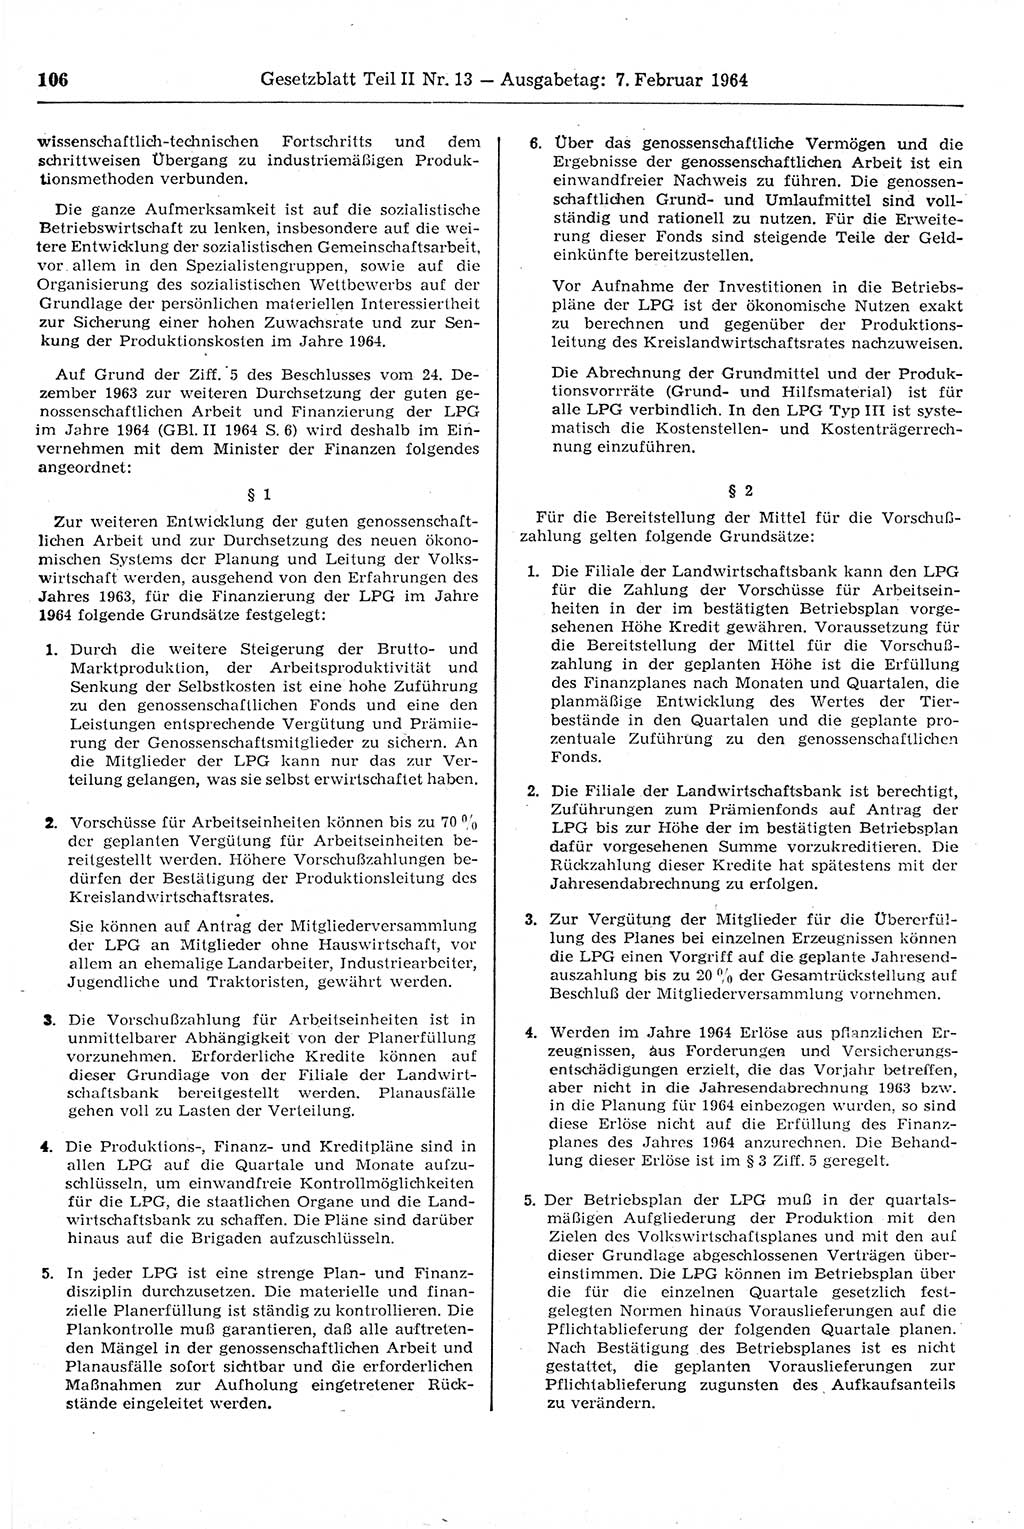 Gesetzblatt (GBl.) der Deutschen Demokratischen Republik (DDR) Teil ⅠⅠ 1964, Seite 106 (GBl. DDR ⅠⅠ 1964, S. 106)